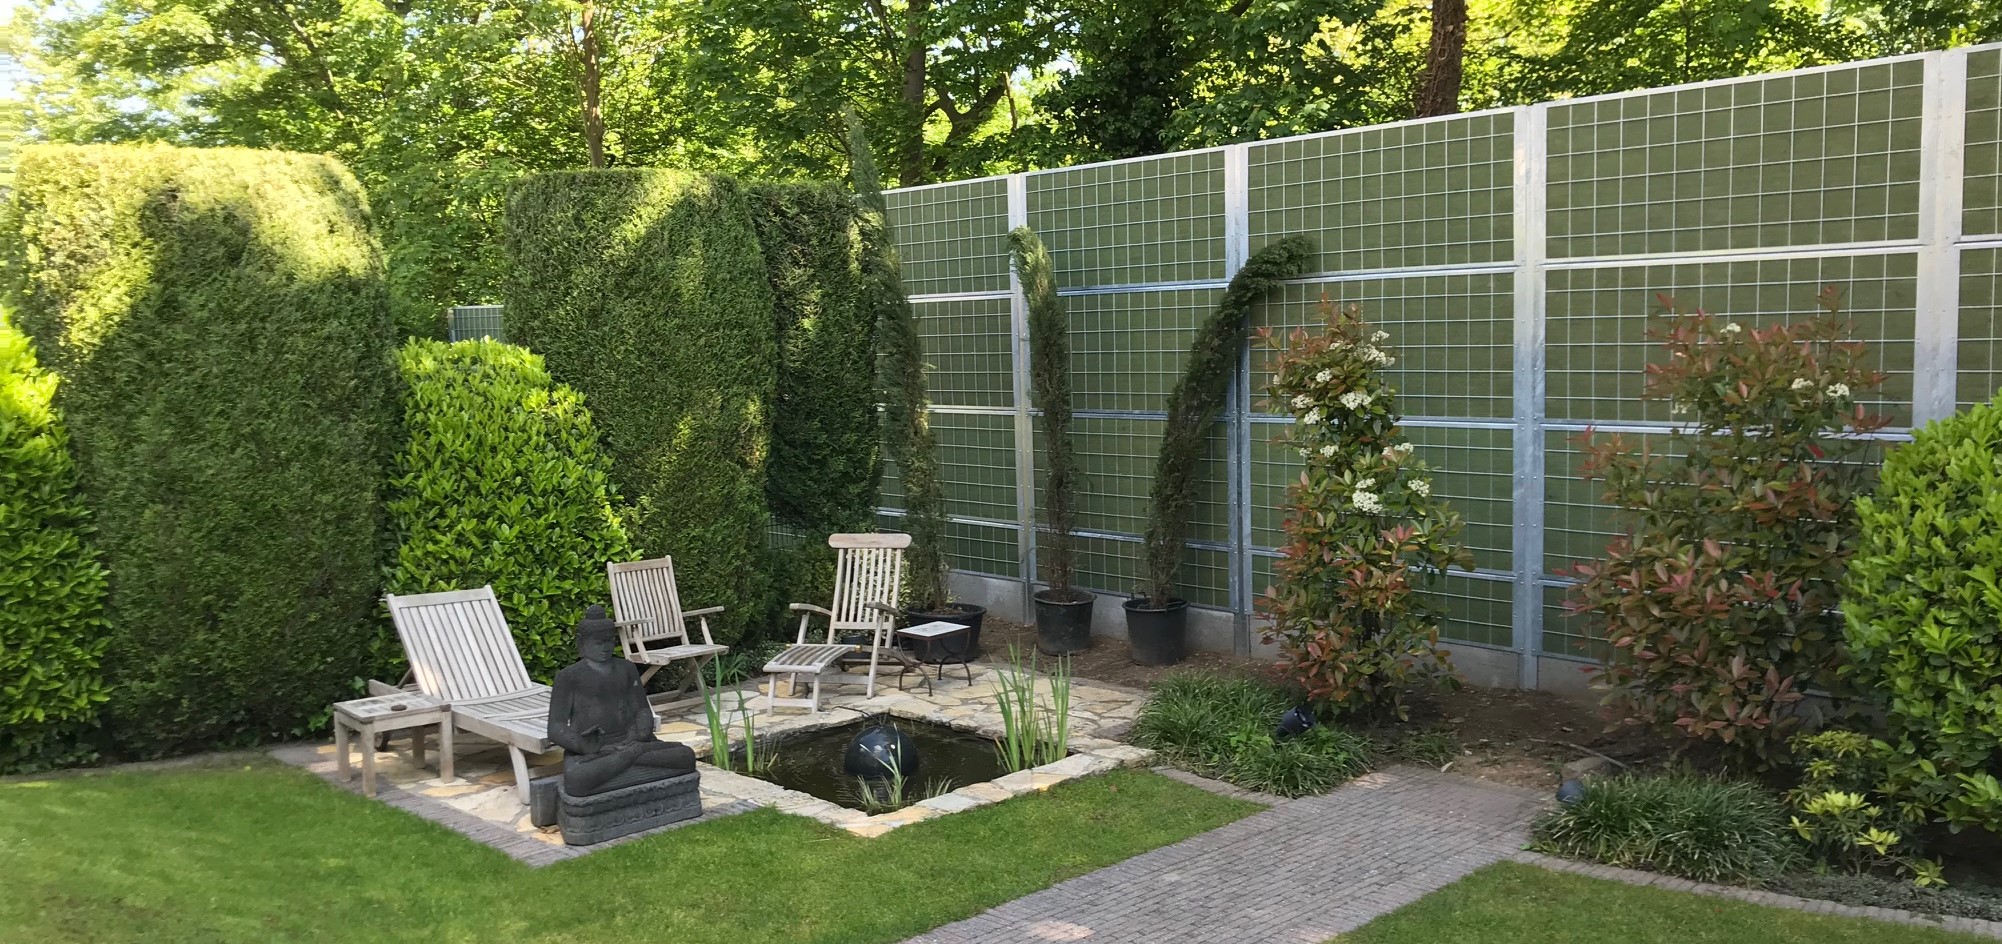 En mysig trädgård med buskar och fiskdamm, har ett Noistop® Steel bullerplank från Poda Stängsel uppsatt som avskärmning till grannarna.